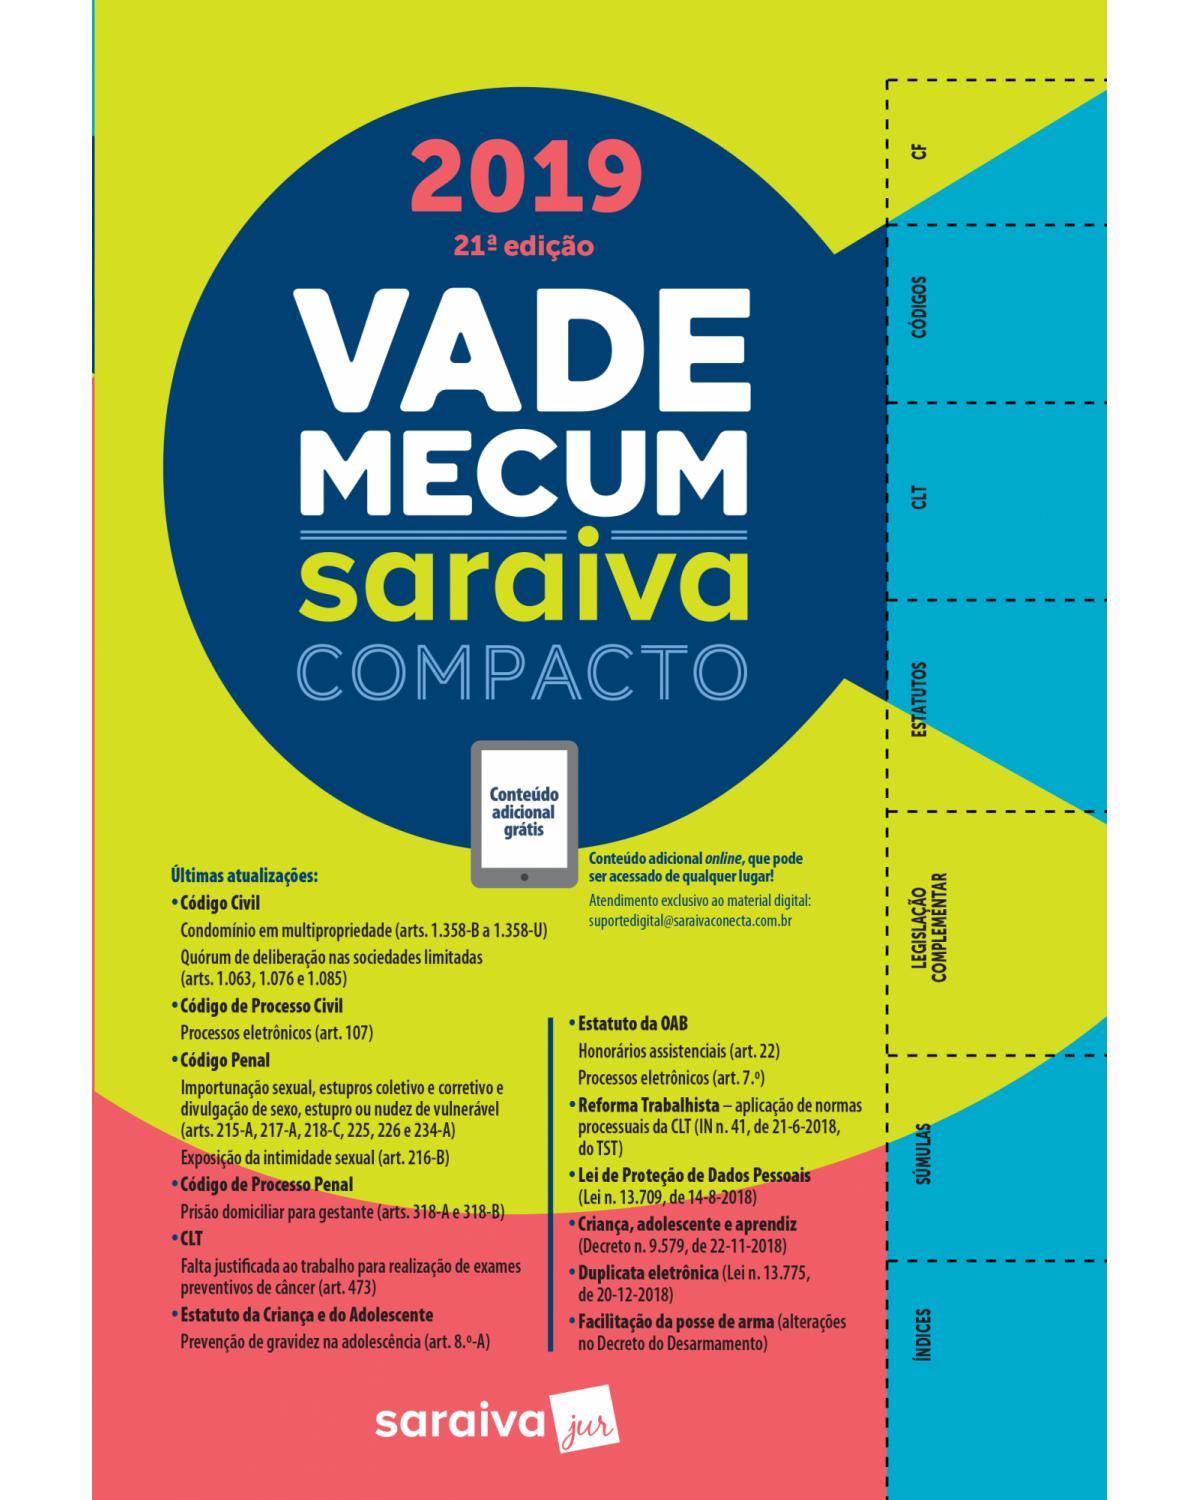 Vade mecum Saraiva compacto - 21ª Edição | 2019